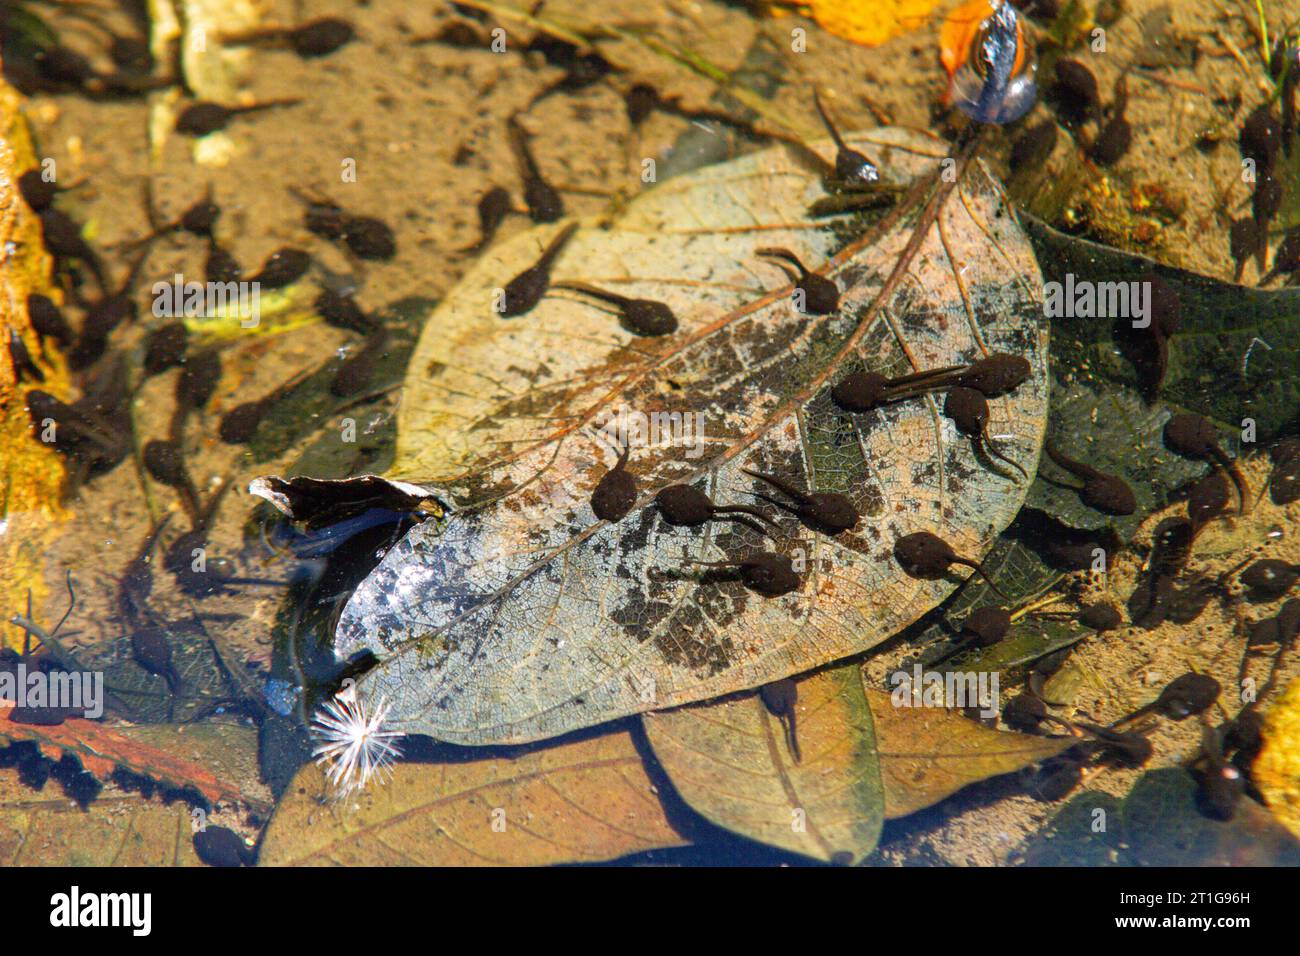 tadpoles in an outdoor pond in Rio de Janeiro, Brazil. Stock Photo